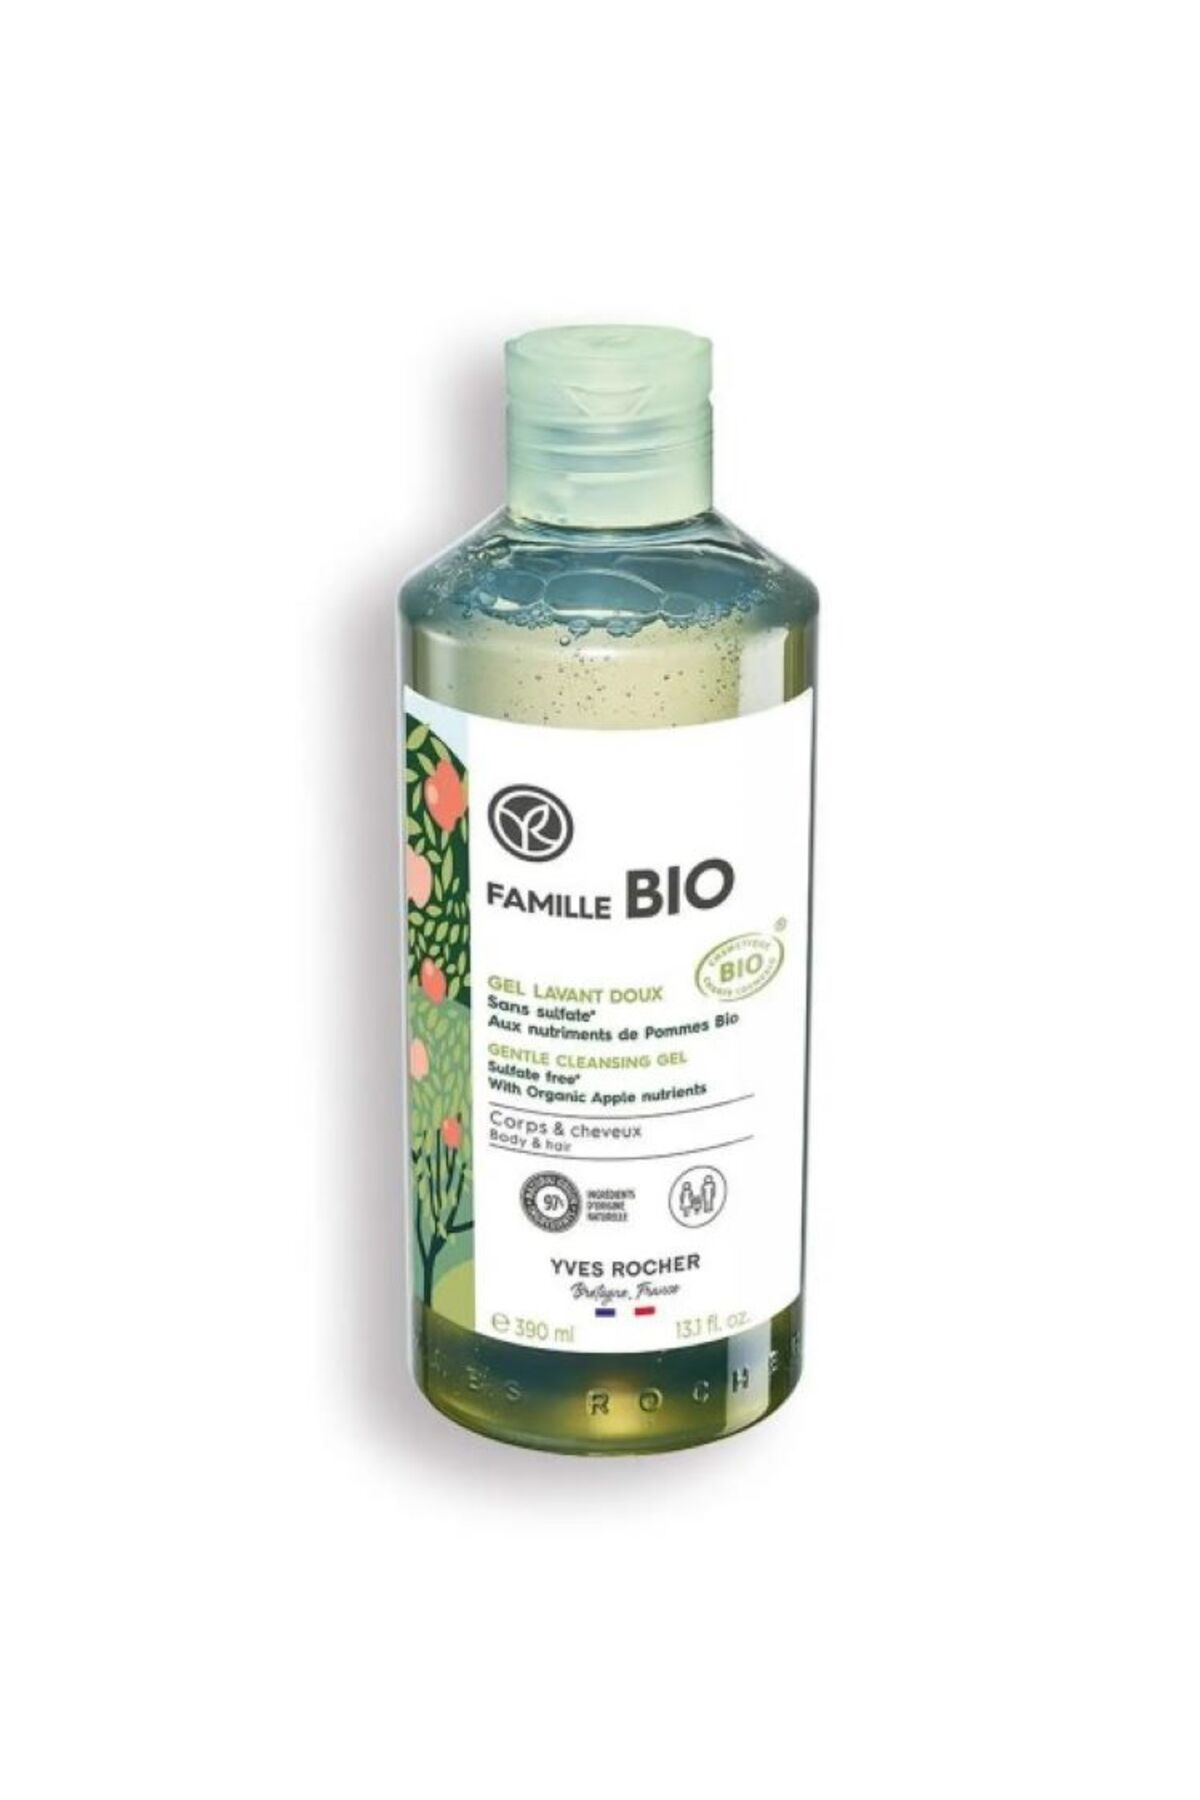 Yves Rocher Saç ve Vücut Şampuanı / Famille Bio Tüm Aile İçin Organik Sertifikalı 390 ml